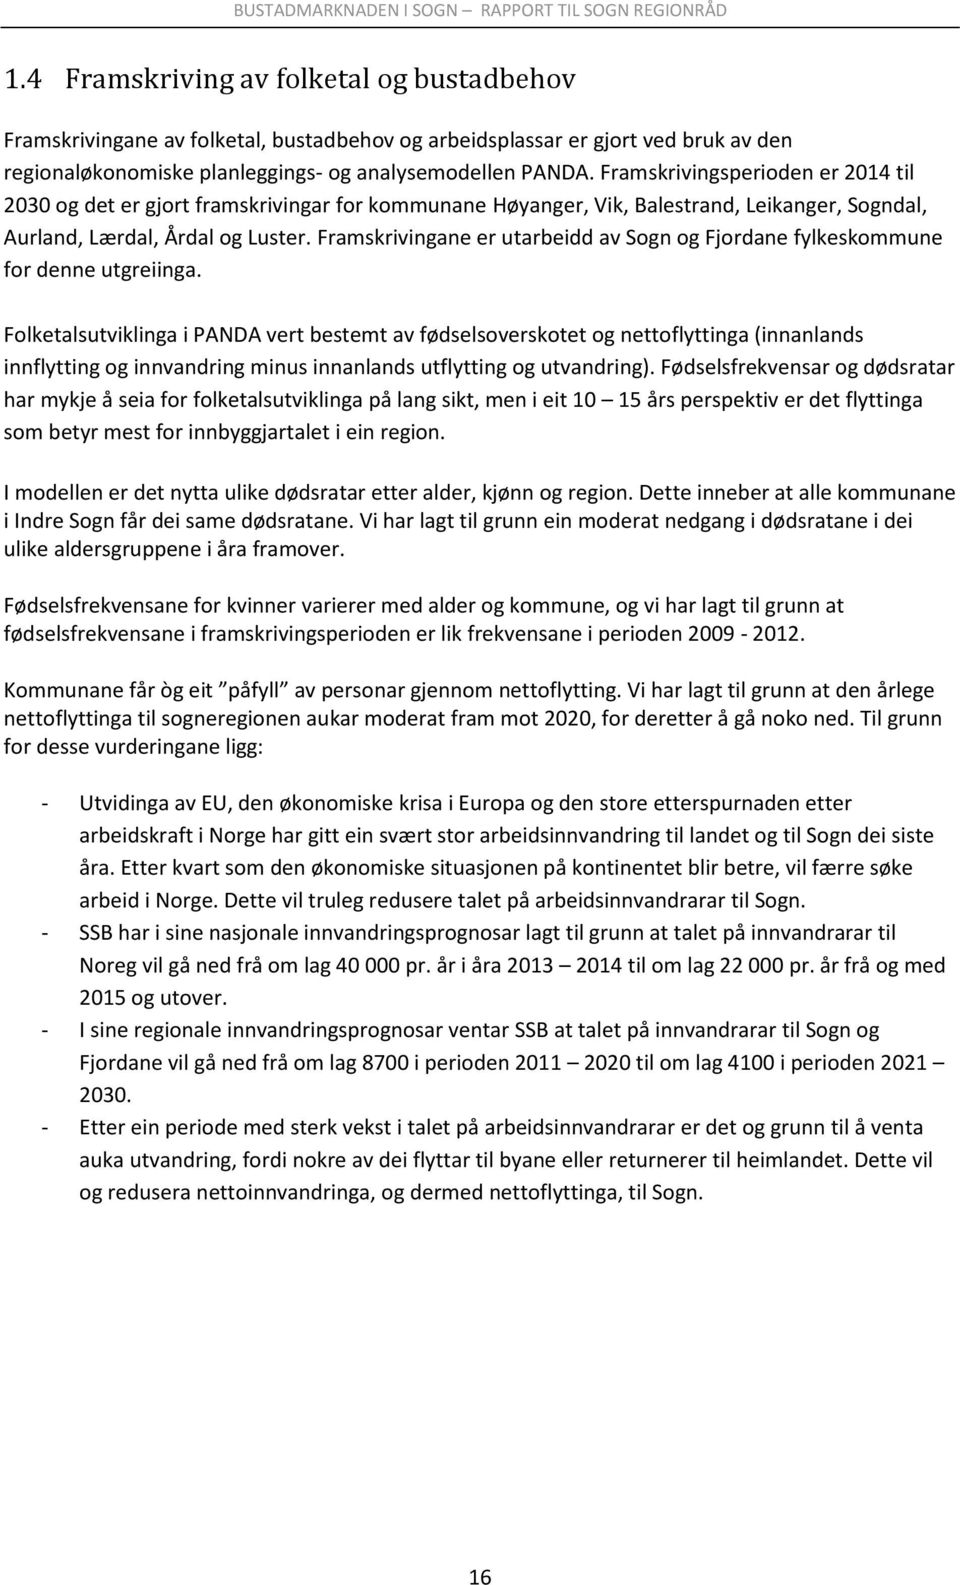 Framskrivingane er utarbeidd av Sogn og Fjordane fylkeskommune for denne utgreiinga.